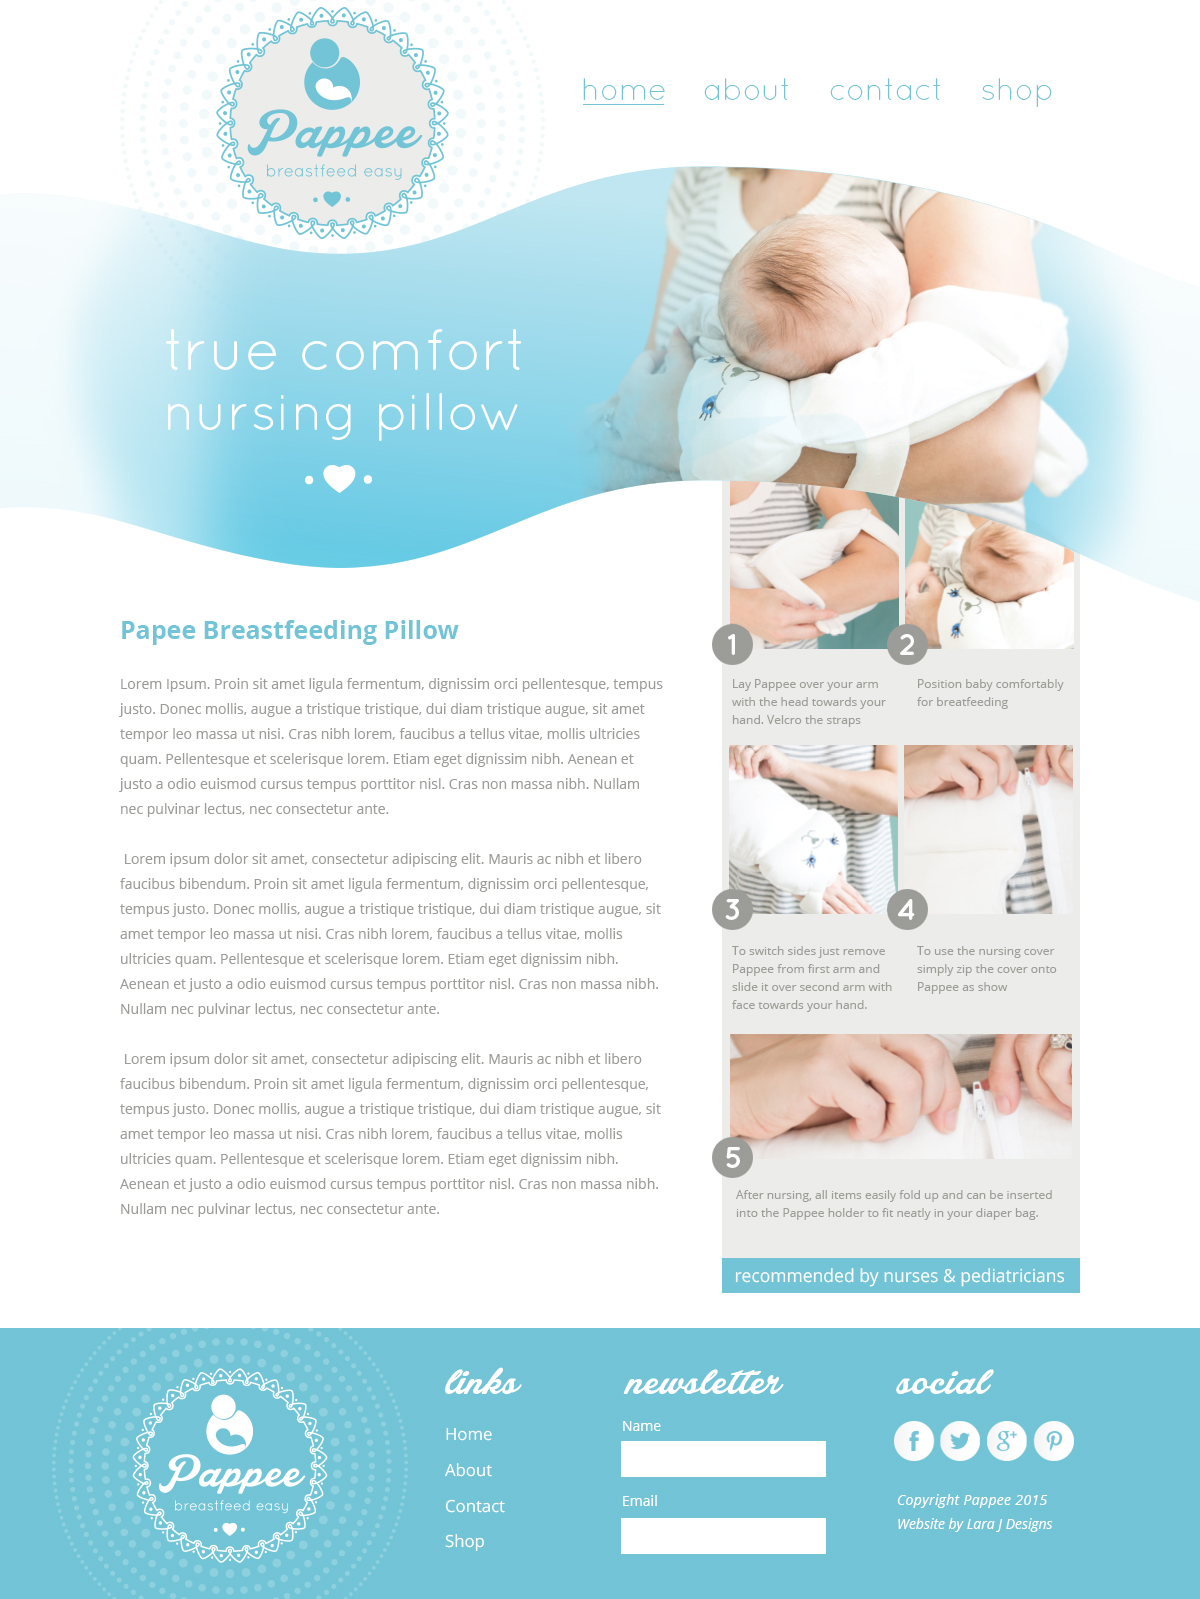 Pappee Nursing Pillow Website Design